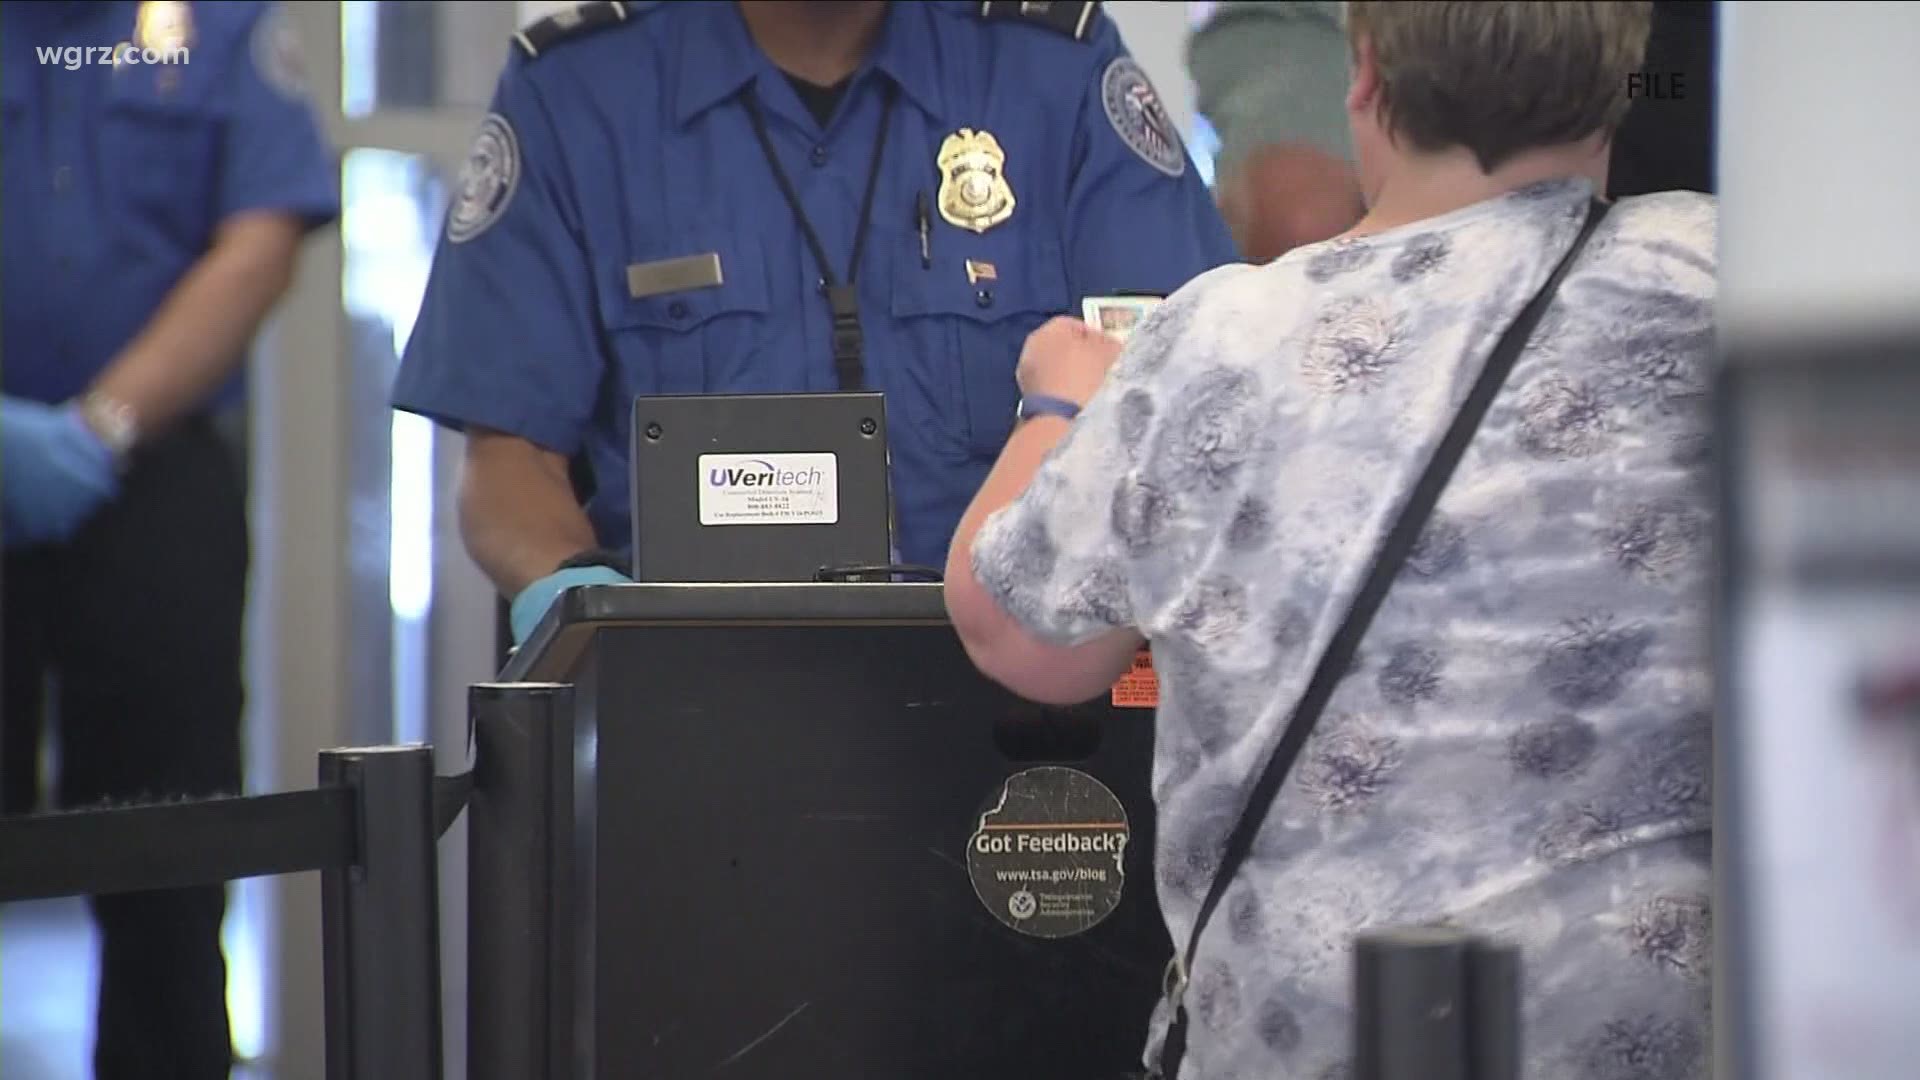 TSA hiring security officers at airports